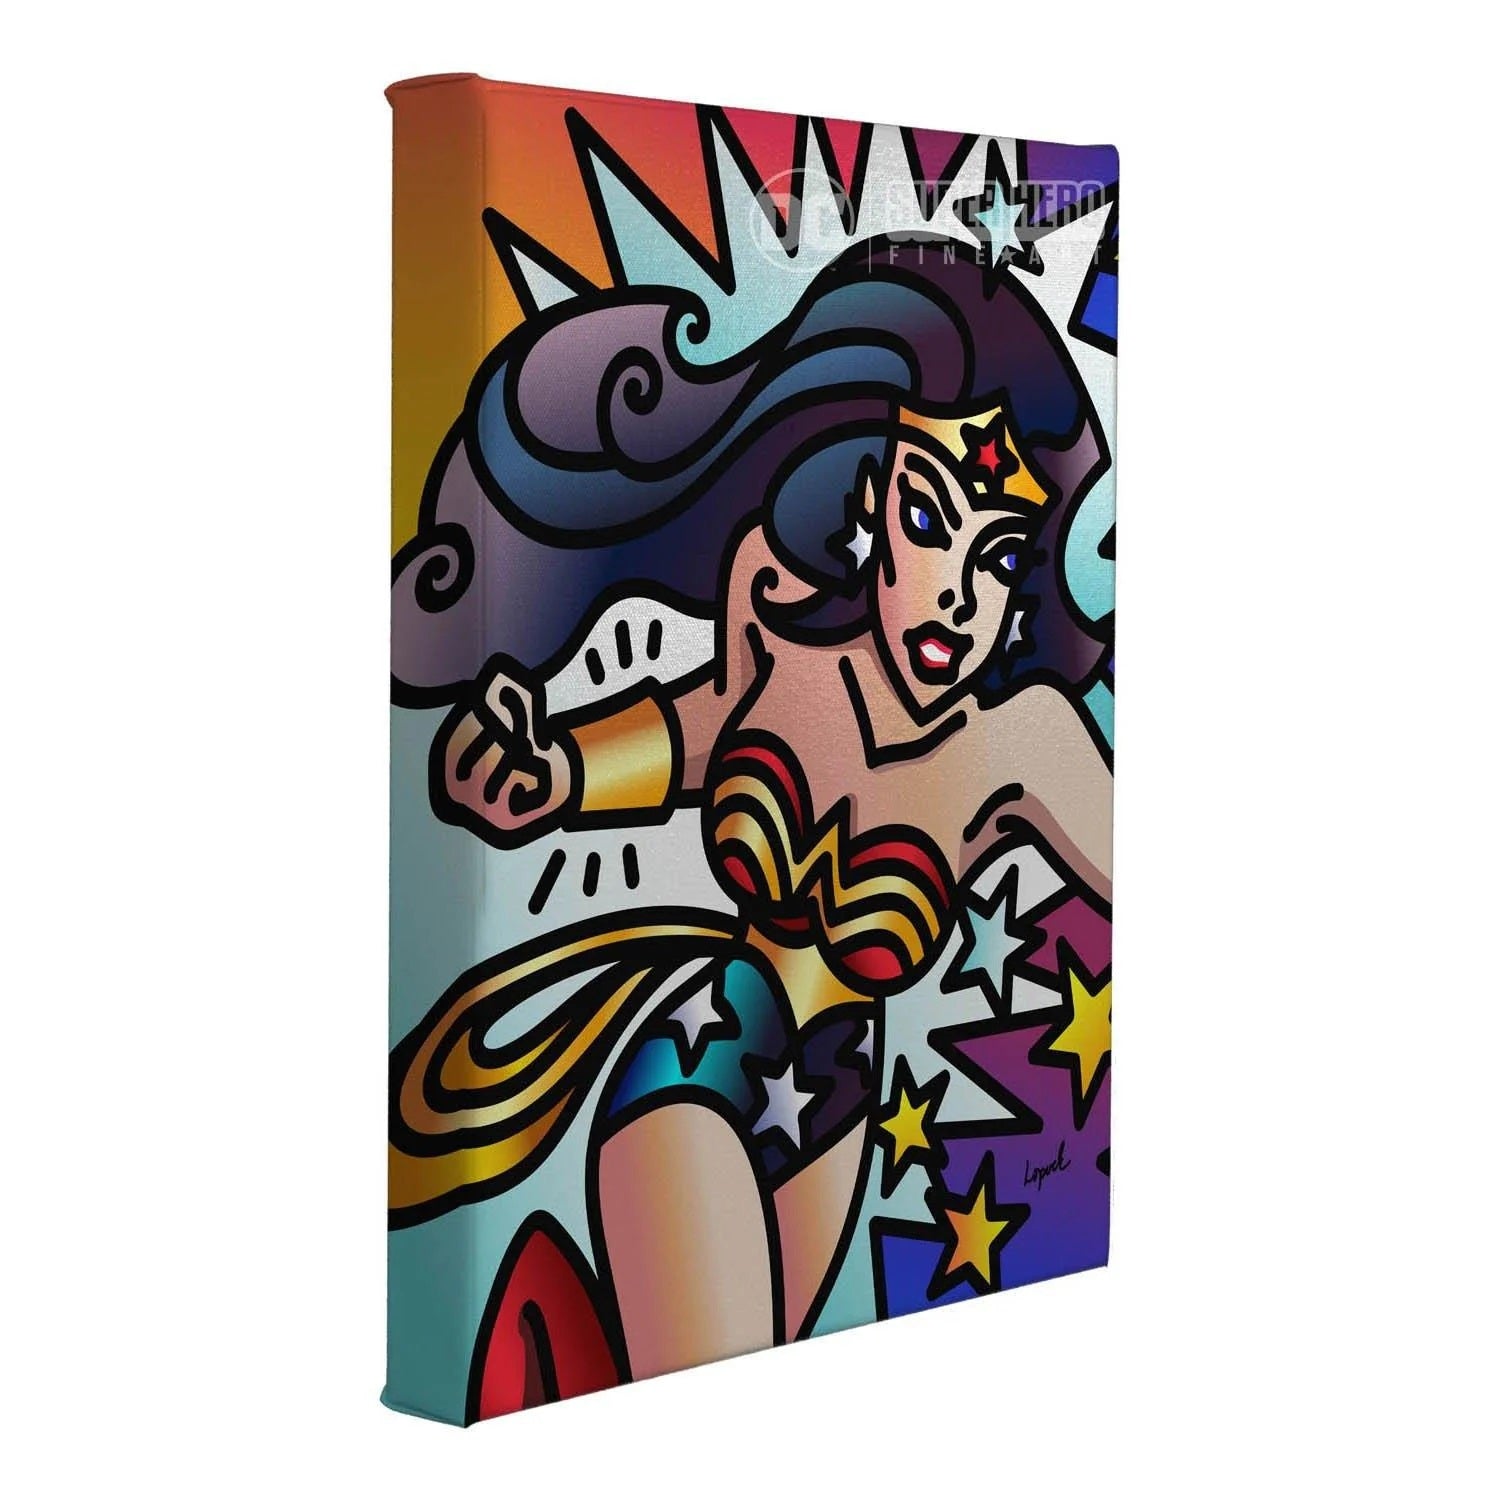 A vibrant portrait the iconic DC Comics - Wonder Woman.